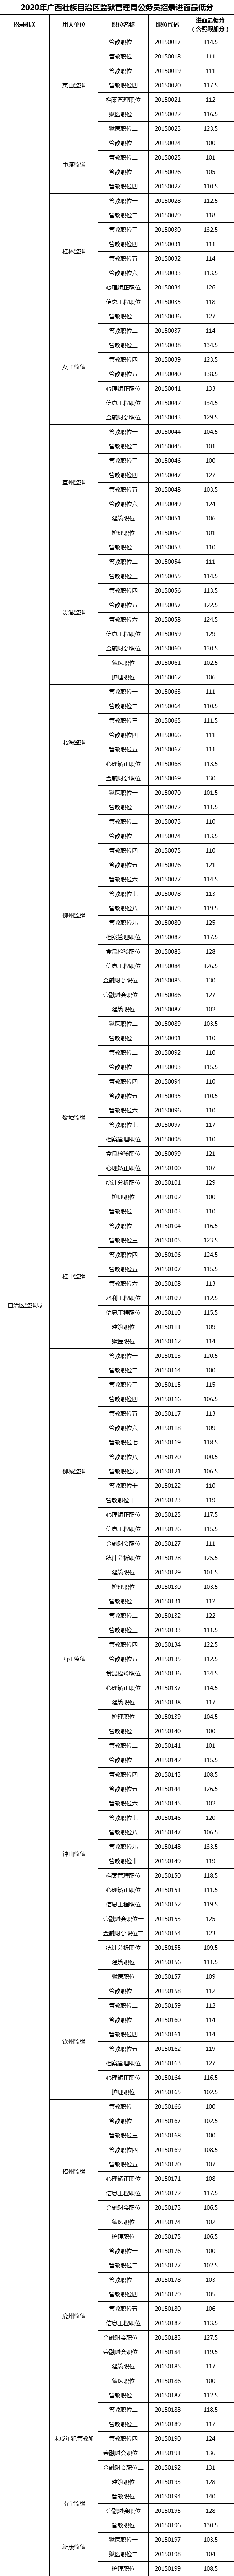 2020年广西壮族自治区监狱管理局公务员招录进面最低分